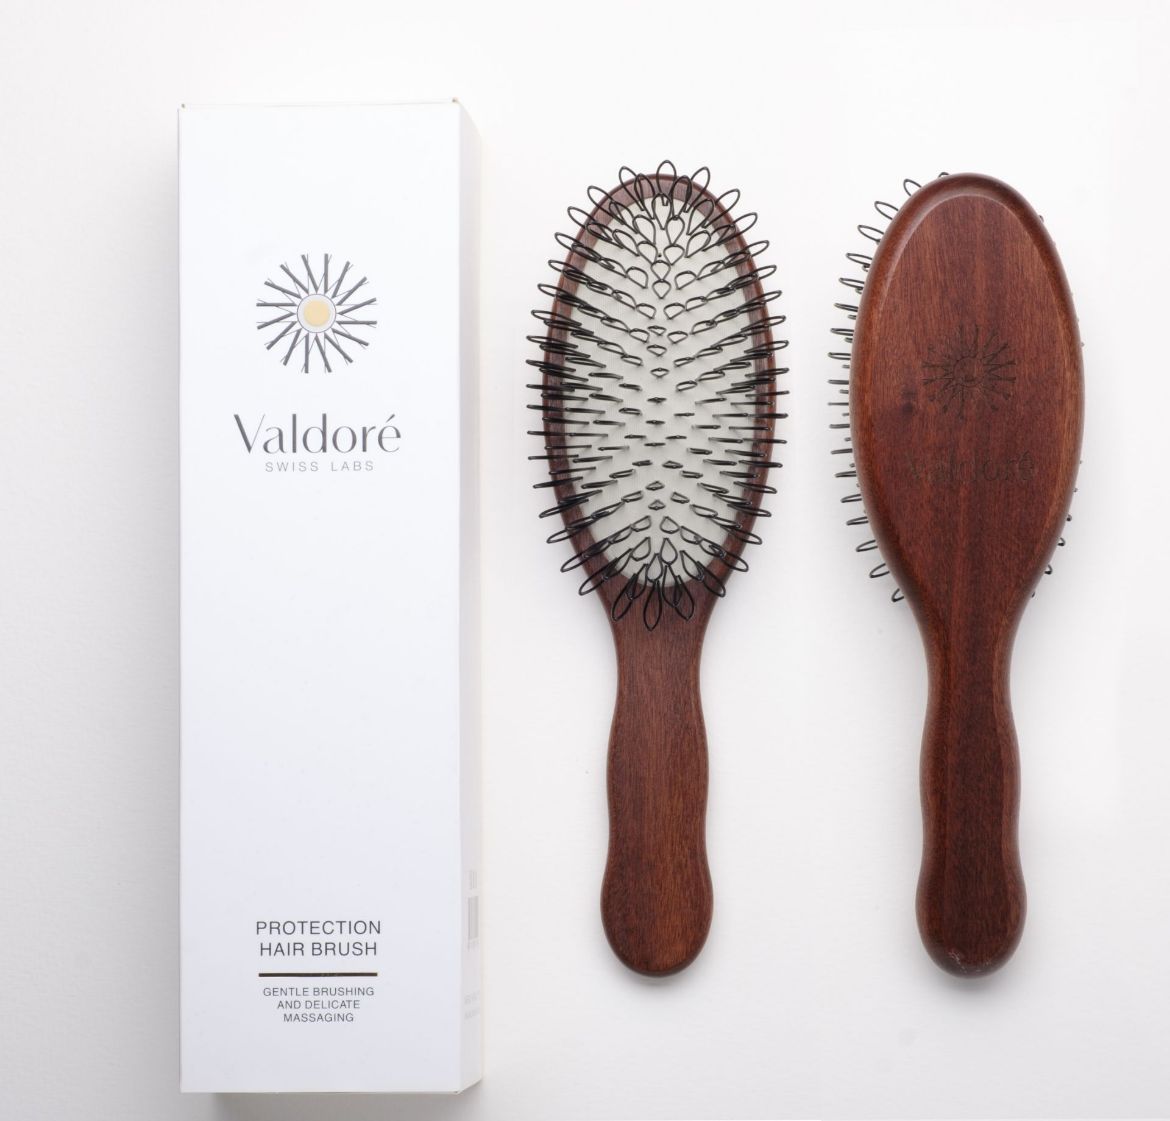 Bild von Valdoré Protection Hair Brush